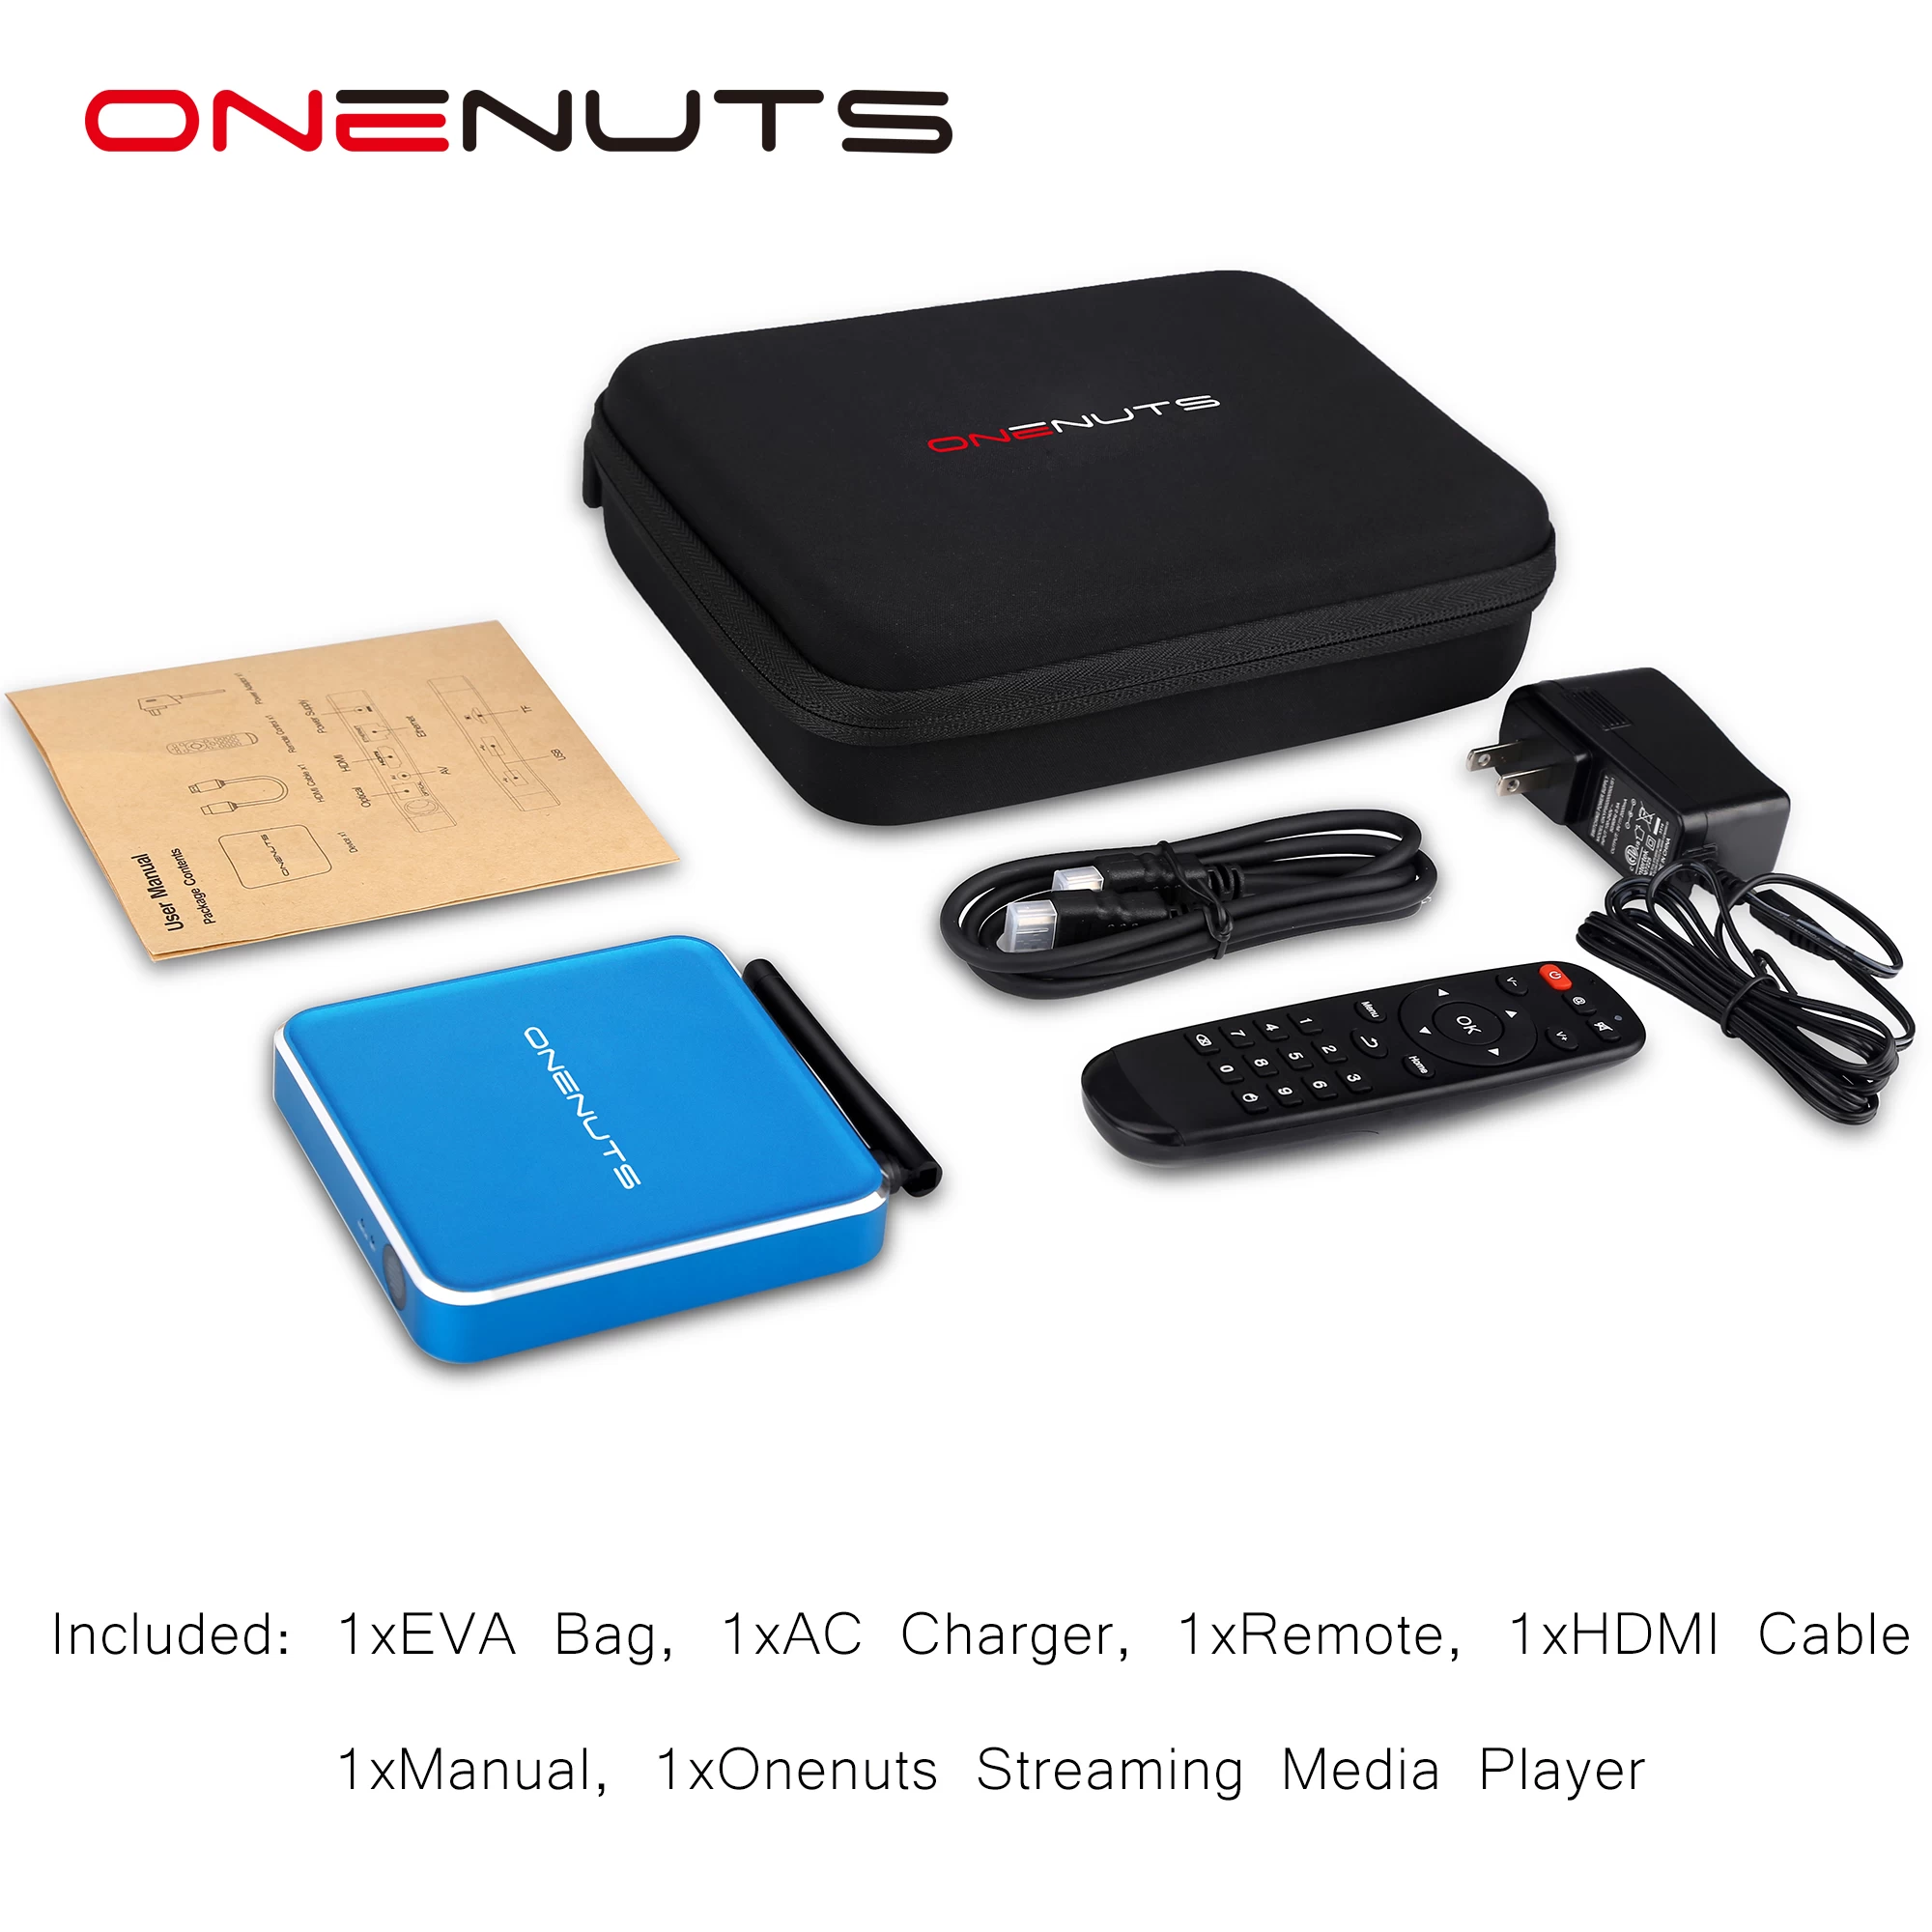 2-in-1 Octa Core Streaming Media Player e gioco Android TV Box con Android 6.0 Marshmallow 2G DDR3 16G eMMC Dual-Band AC WIFI supporto KODI YouTube Netflix Facebook e molti altri - Onenuts Nut 1 Blu